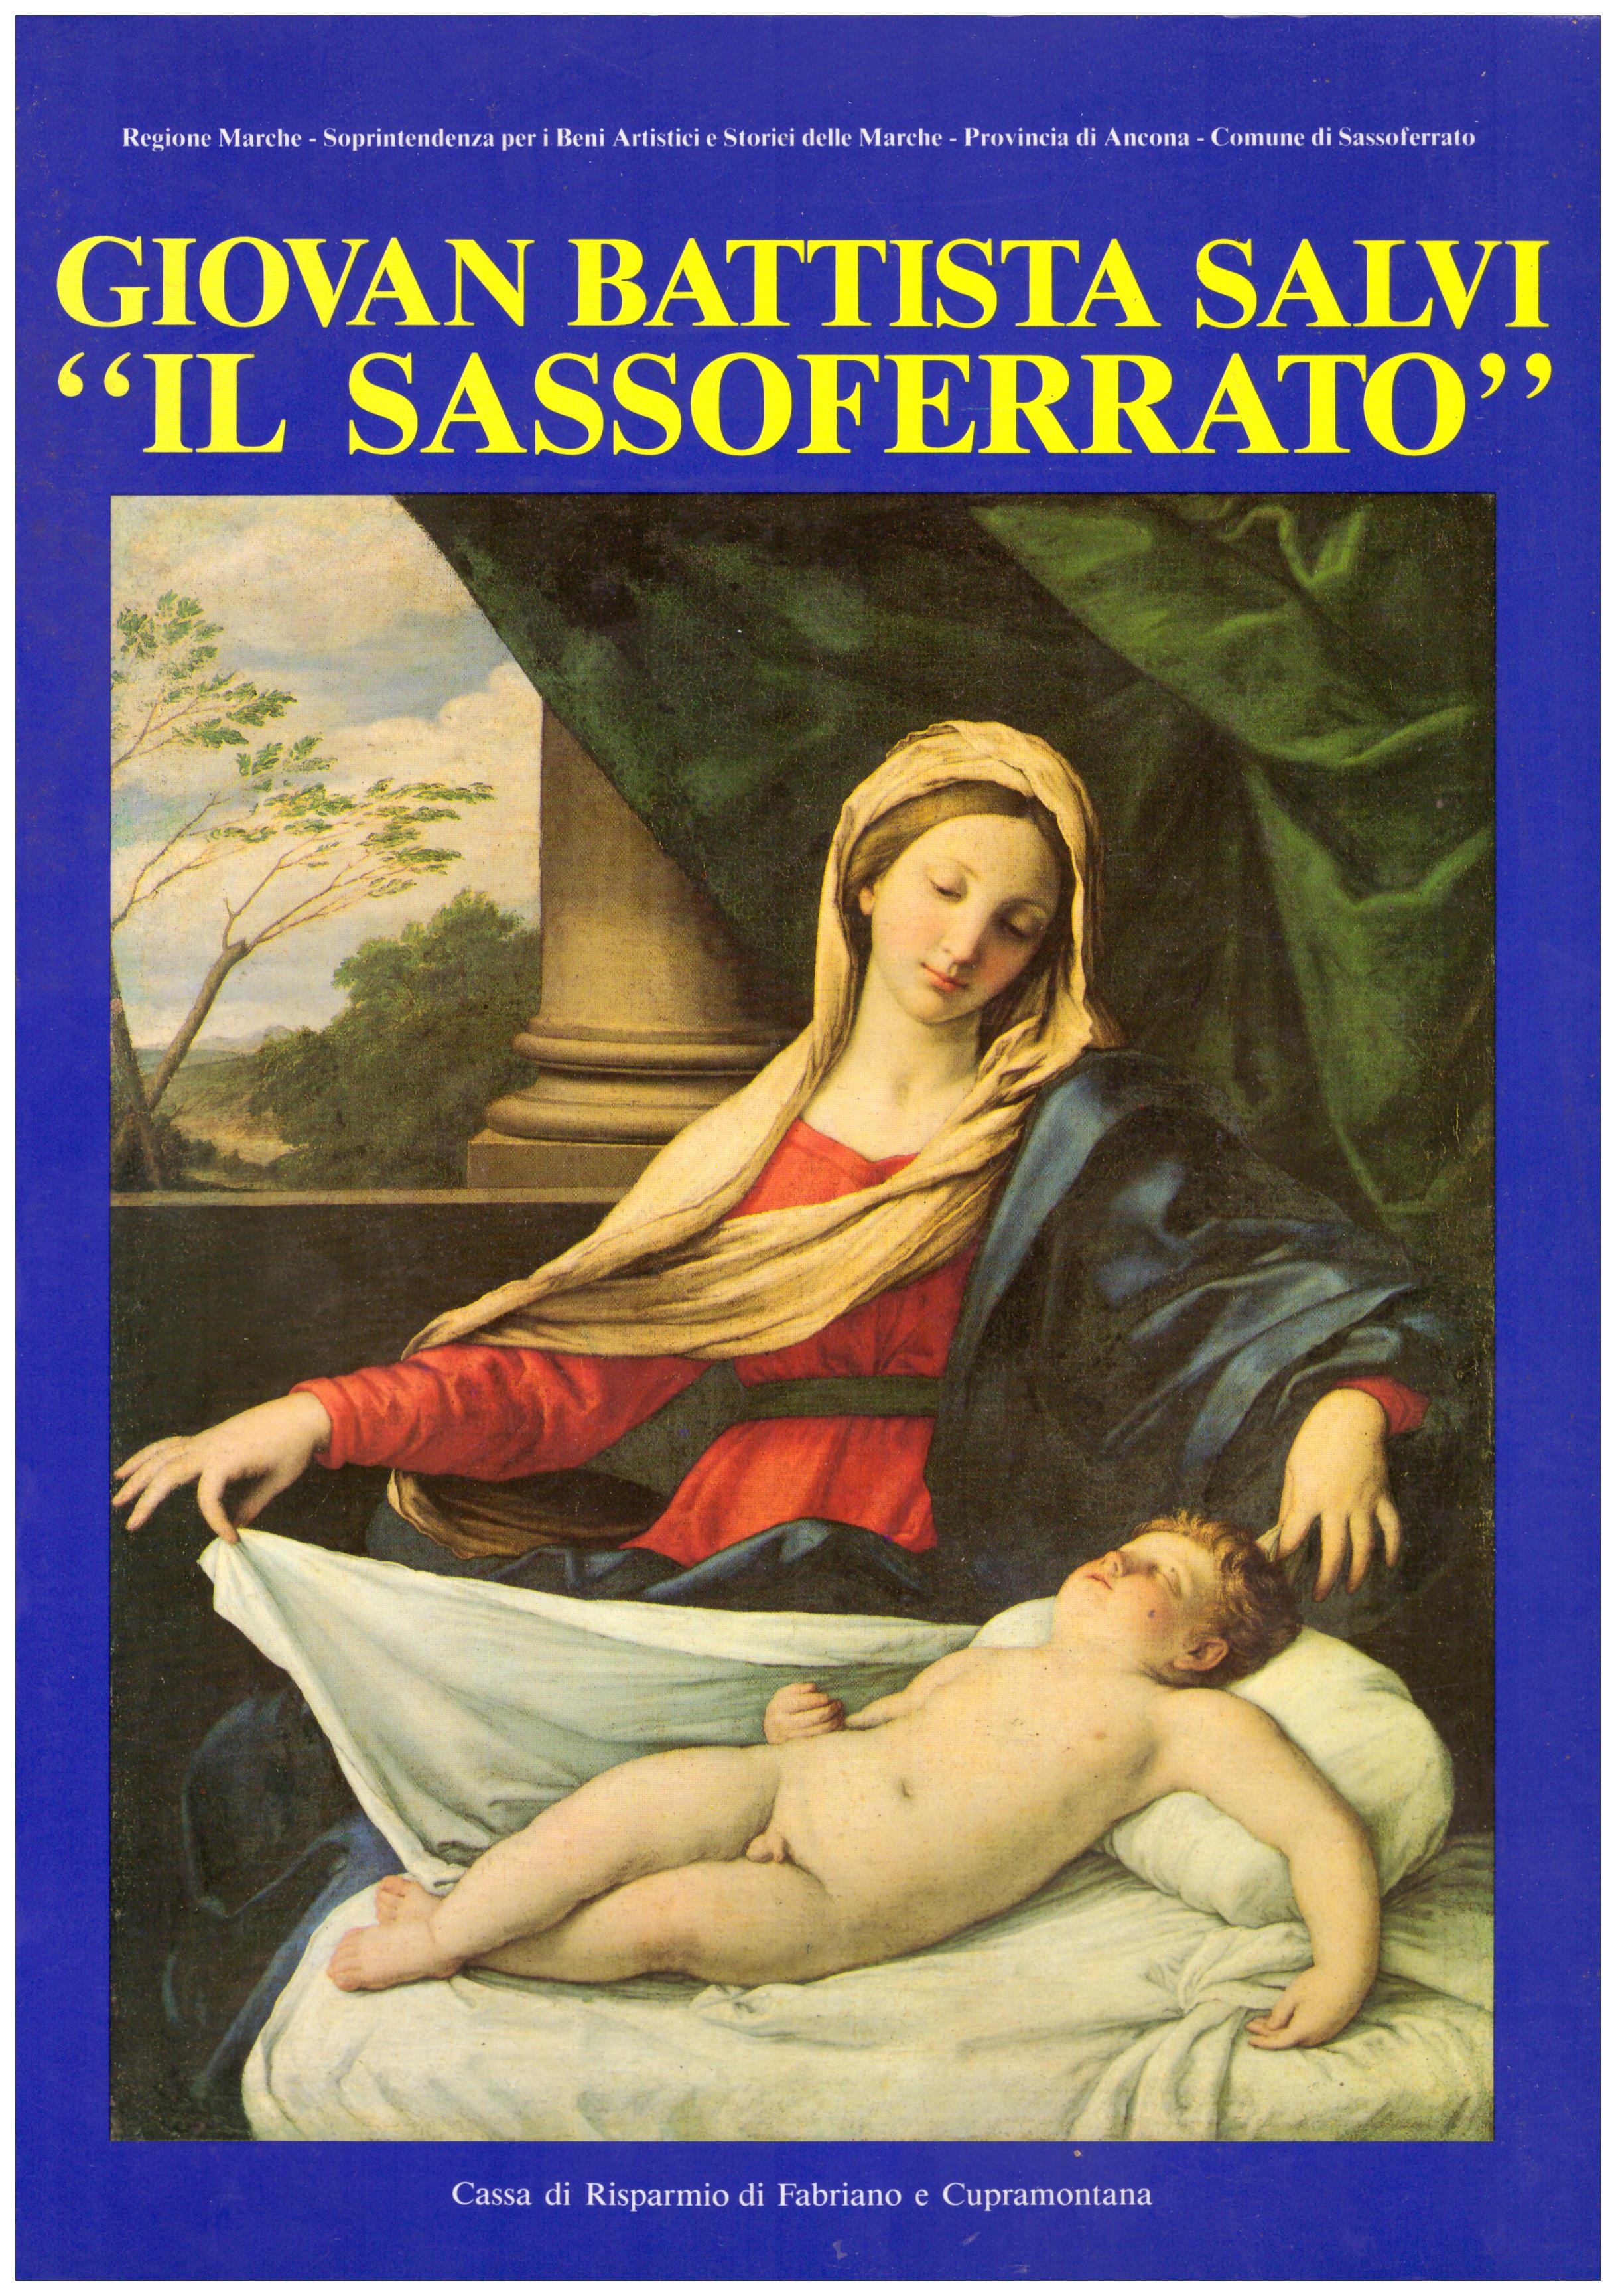 Titolo: Giovan Battista Salvi "Il Sassoferrato"     Autore: AA.VV.      Editore: Cassa di risparmio di Fabriano e Cupramontana, 1990